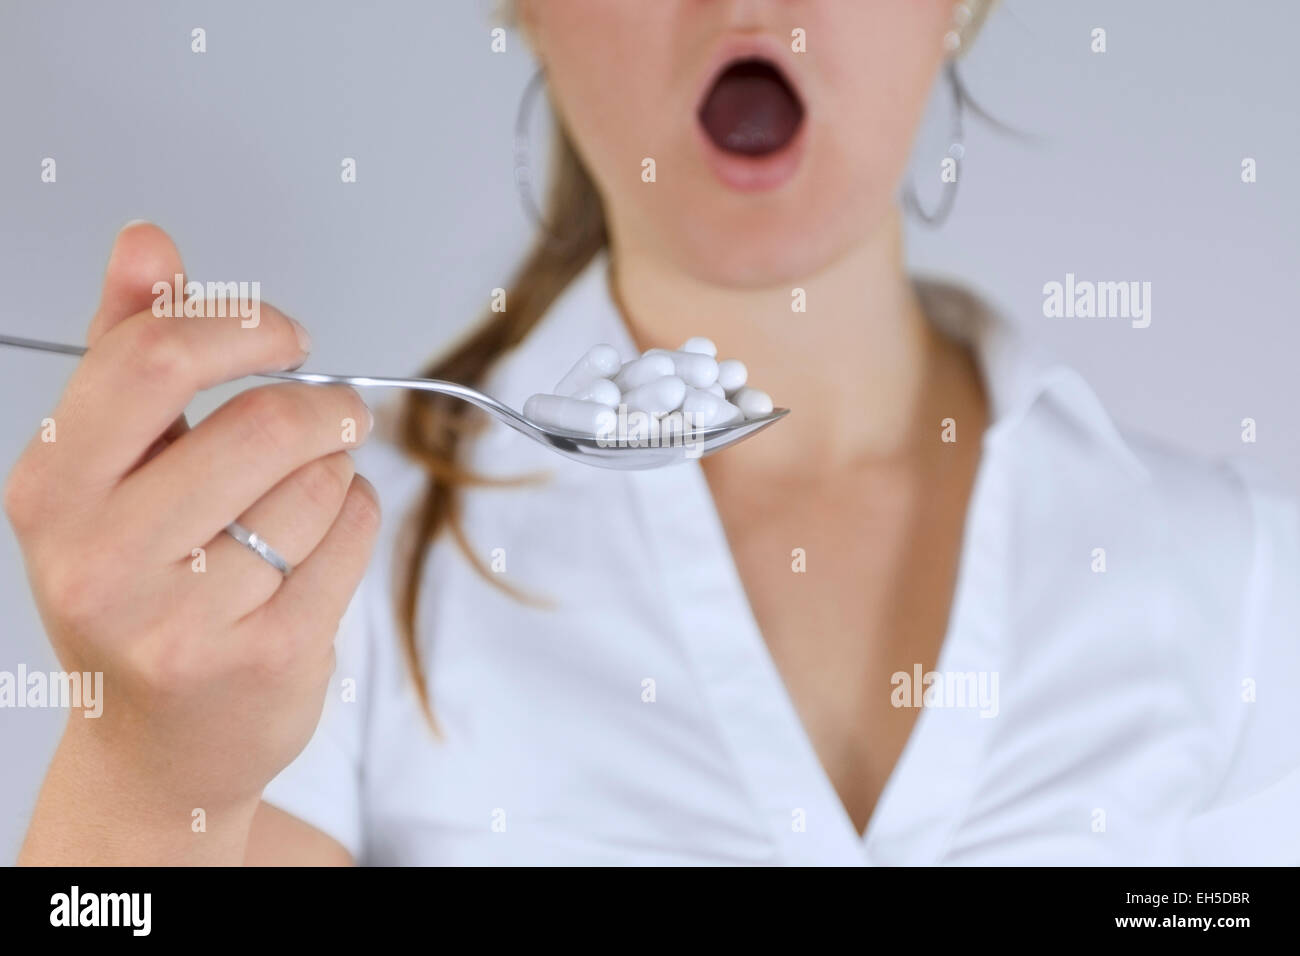 Donna con la bocca aperta prendendo un cucchiaio pieno di pillole o dando pillole. Foto Stock